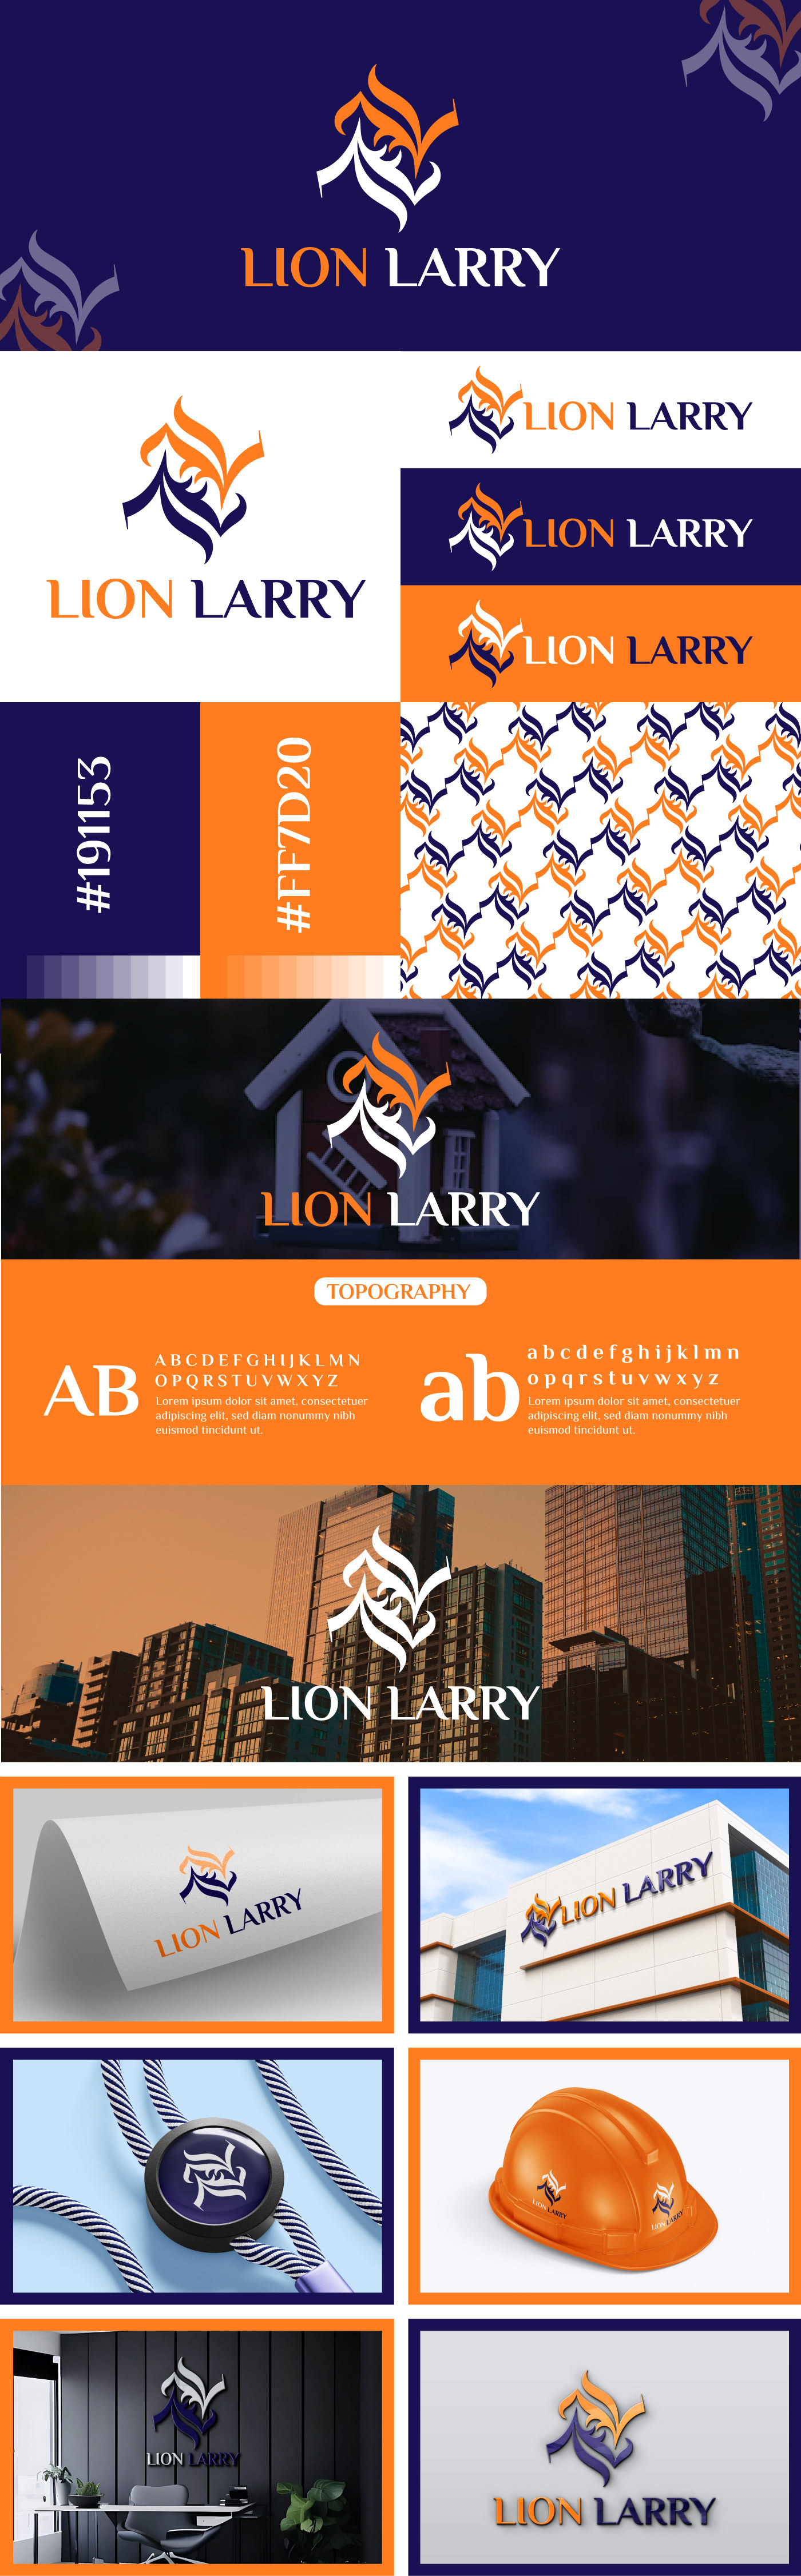 logo case study branding  Logo Design brand identity Logotype visual identity Brand Design logos llogo lllogo